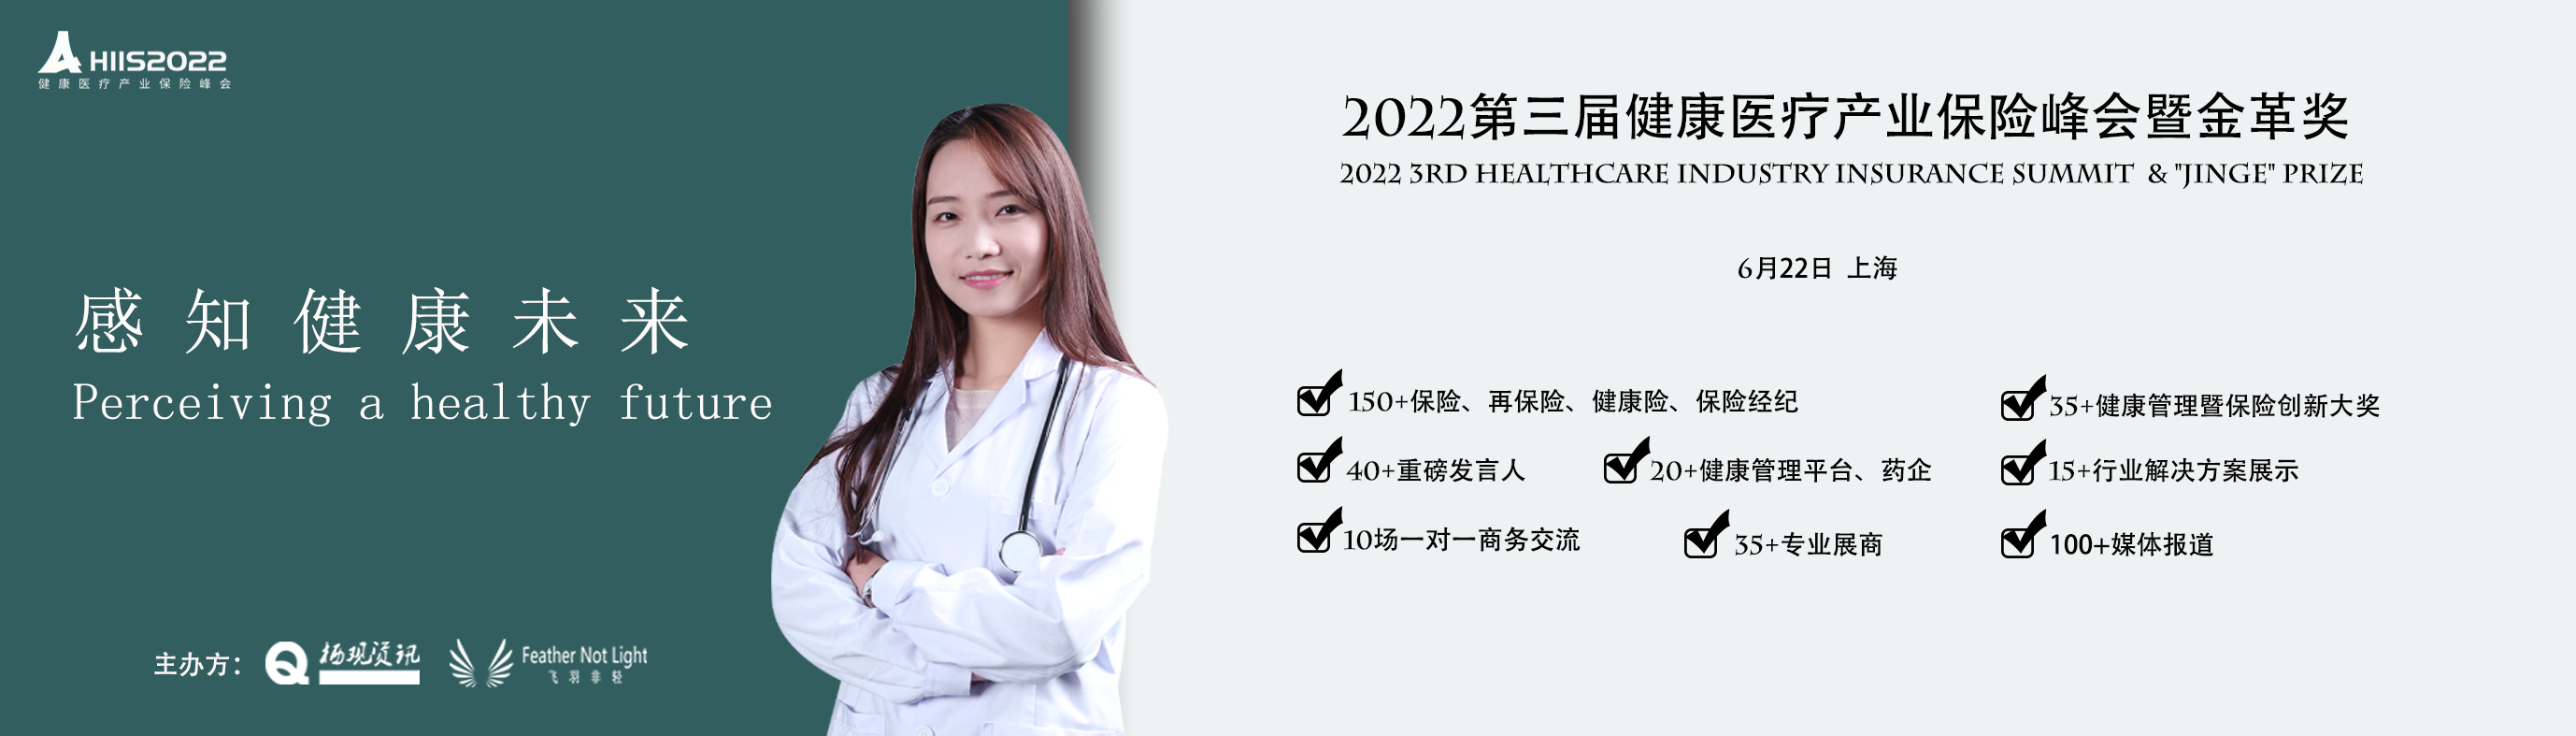 2022第三届健康医疗产业保险峰会暨金革奖